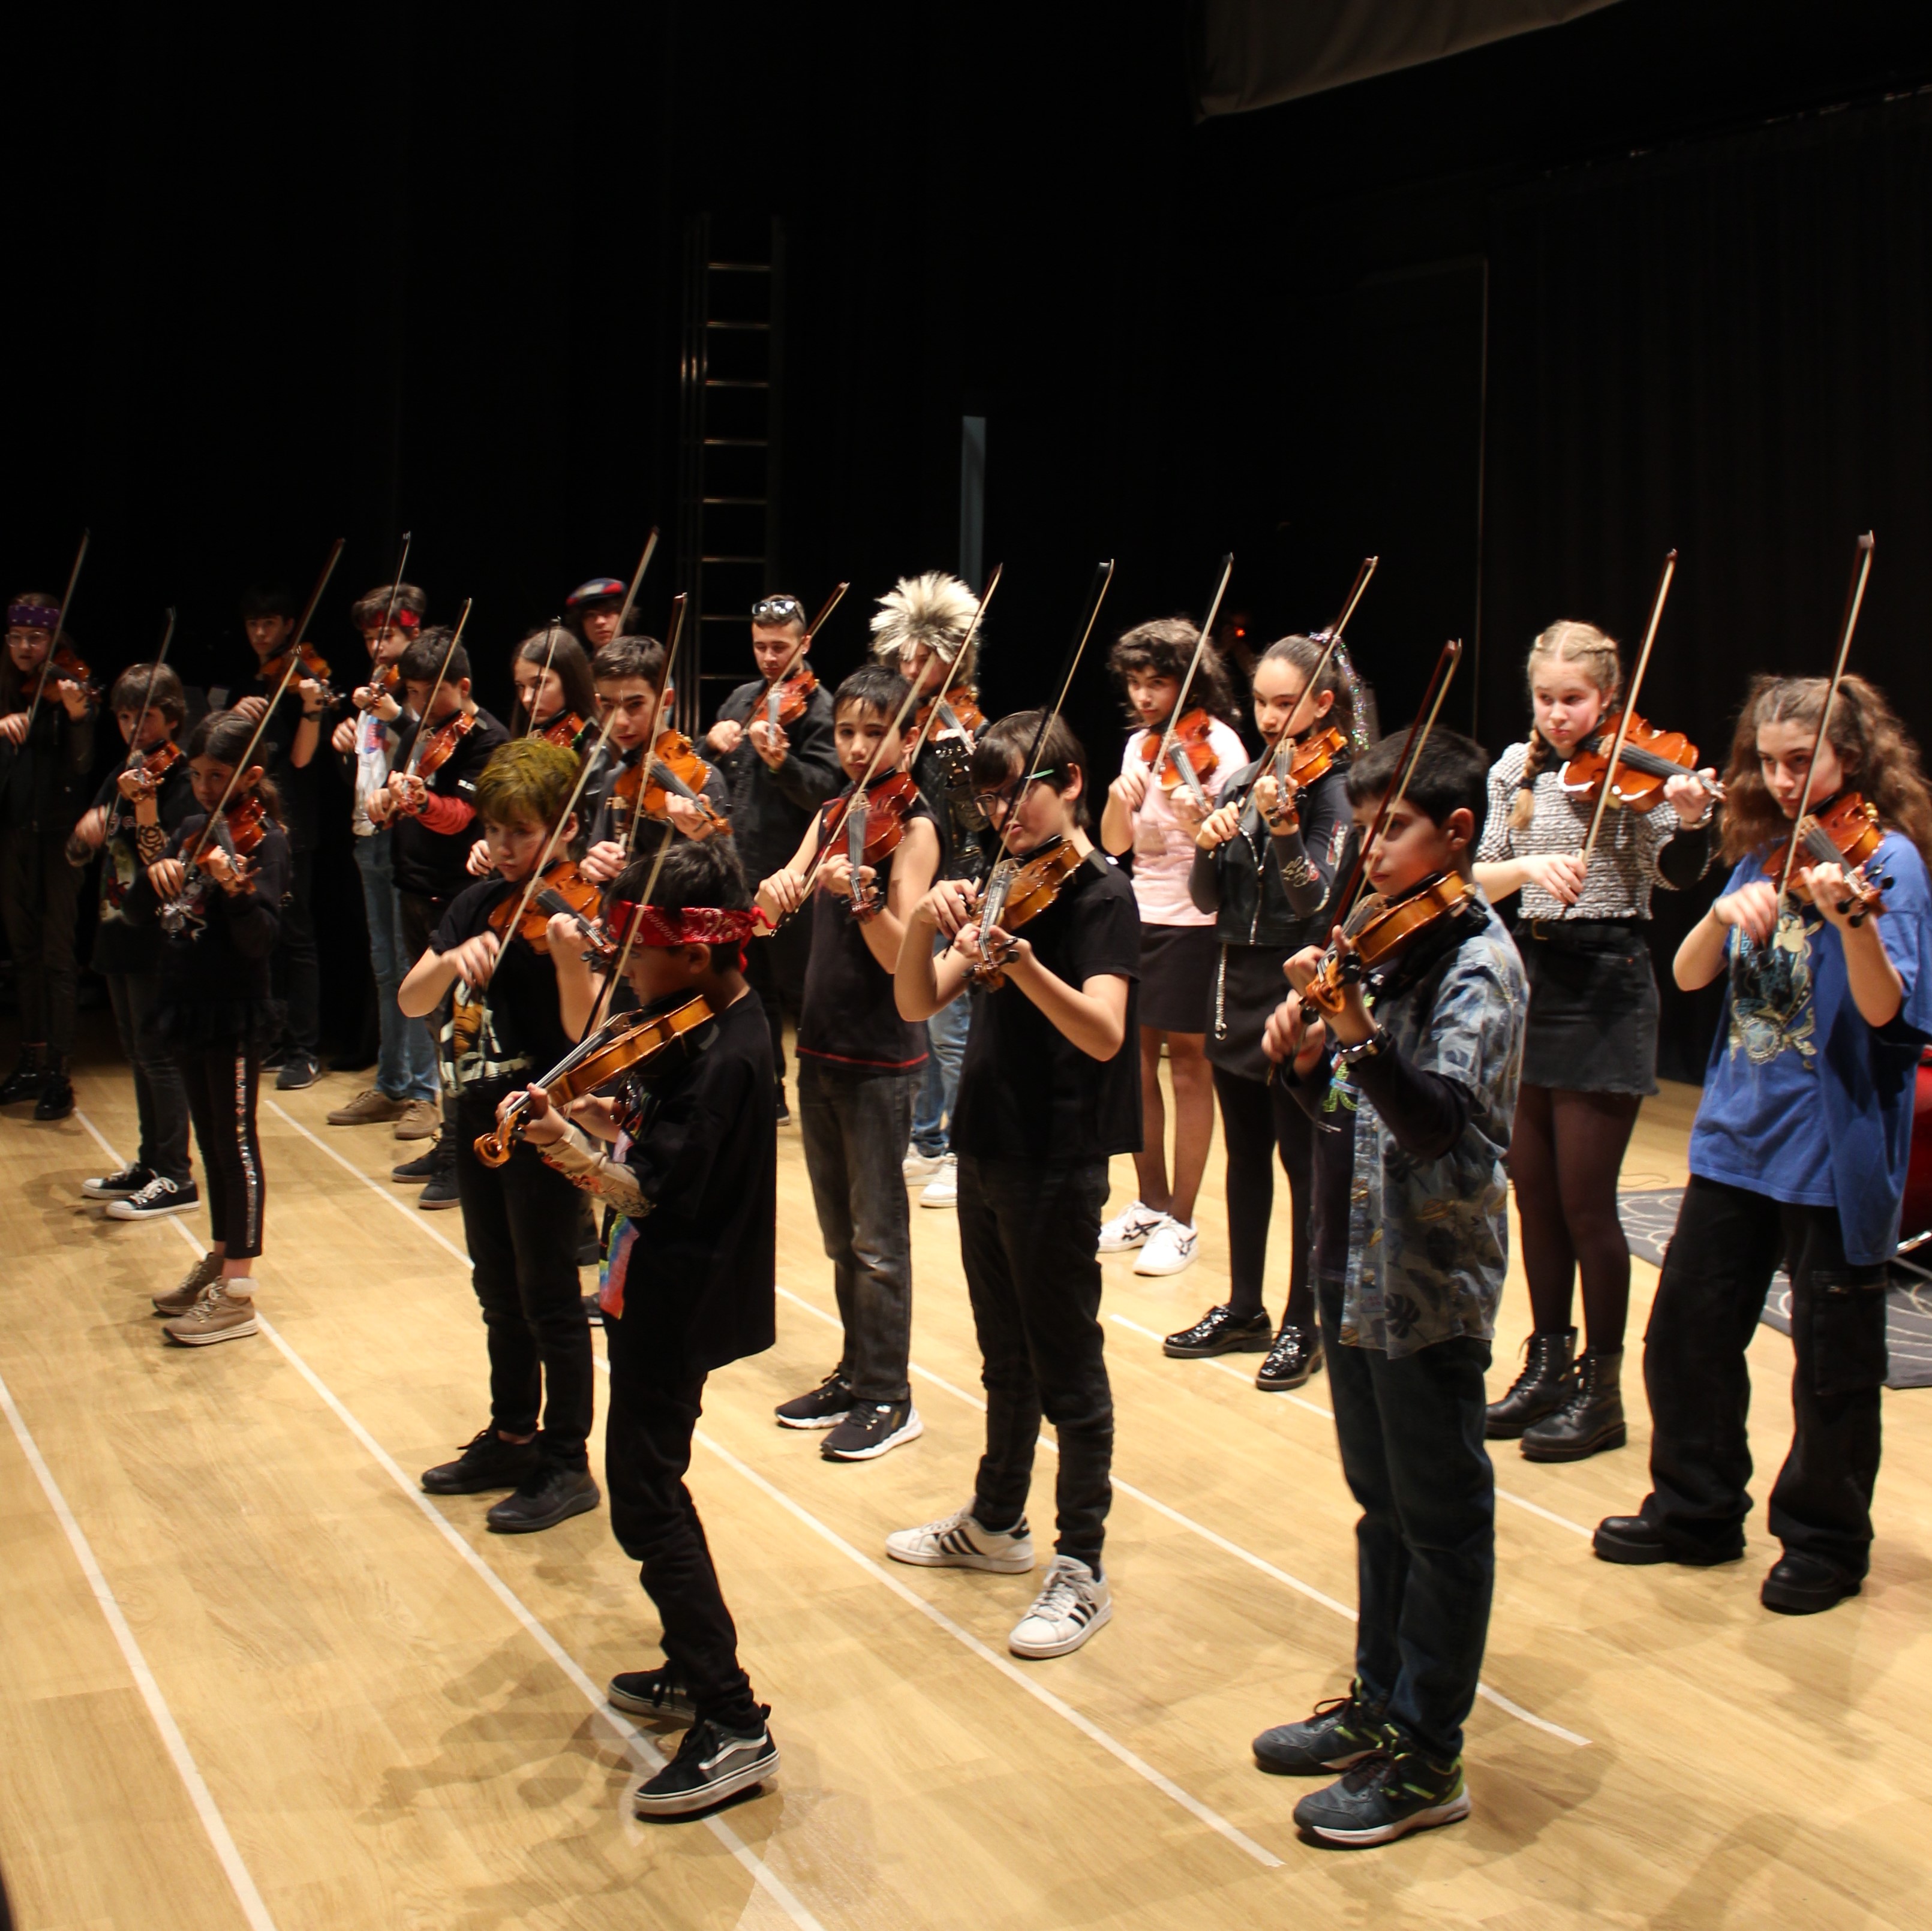 Veinte alumnos de violín participando tocando juntos música moderna con todos sus arcos acompasados